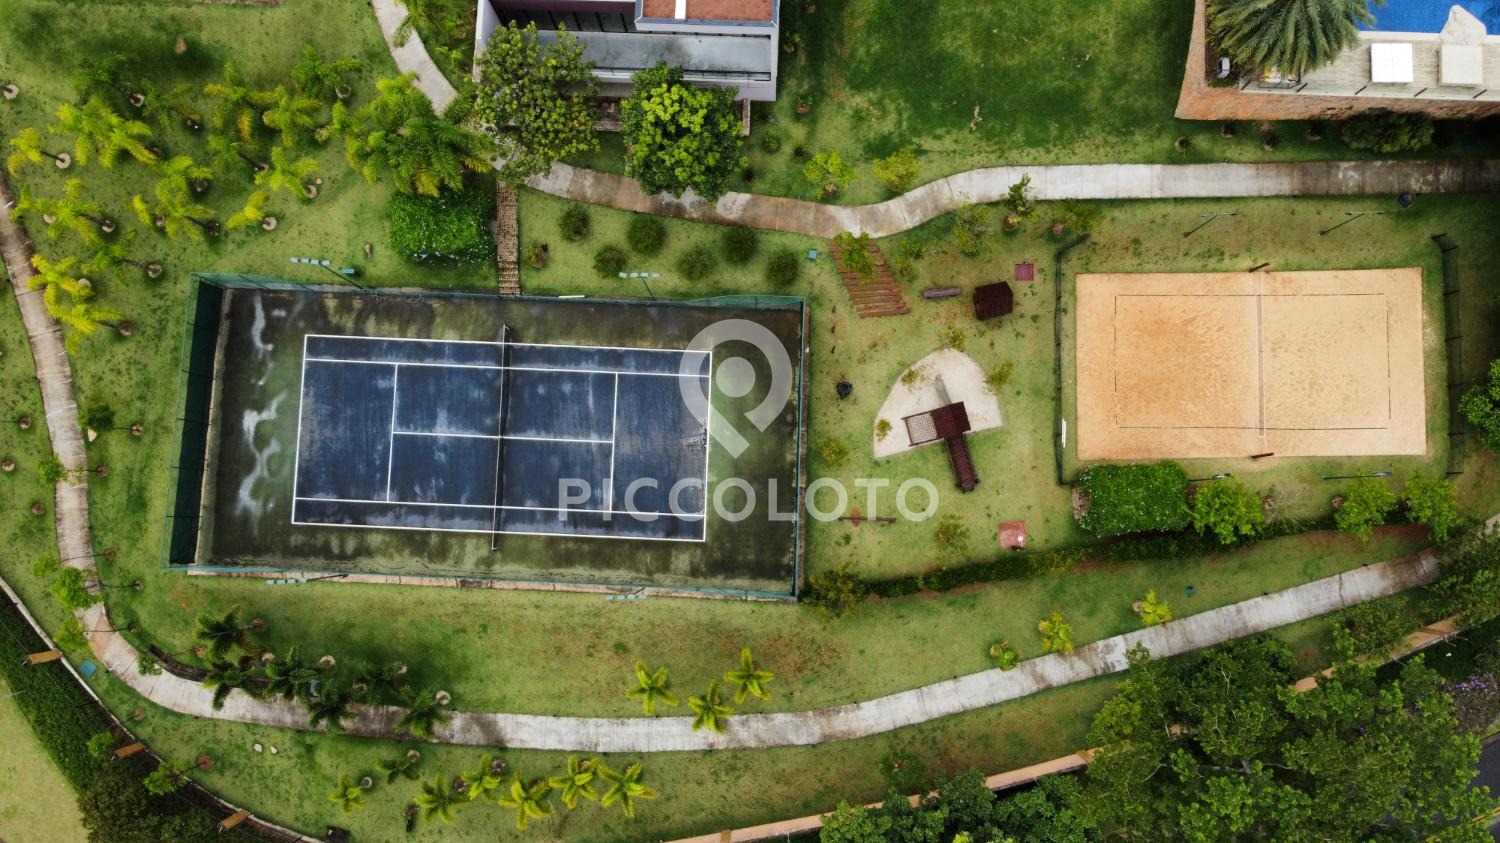 Piccoloto -Casa à venda no Jardim Madalena em Campinas